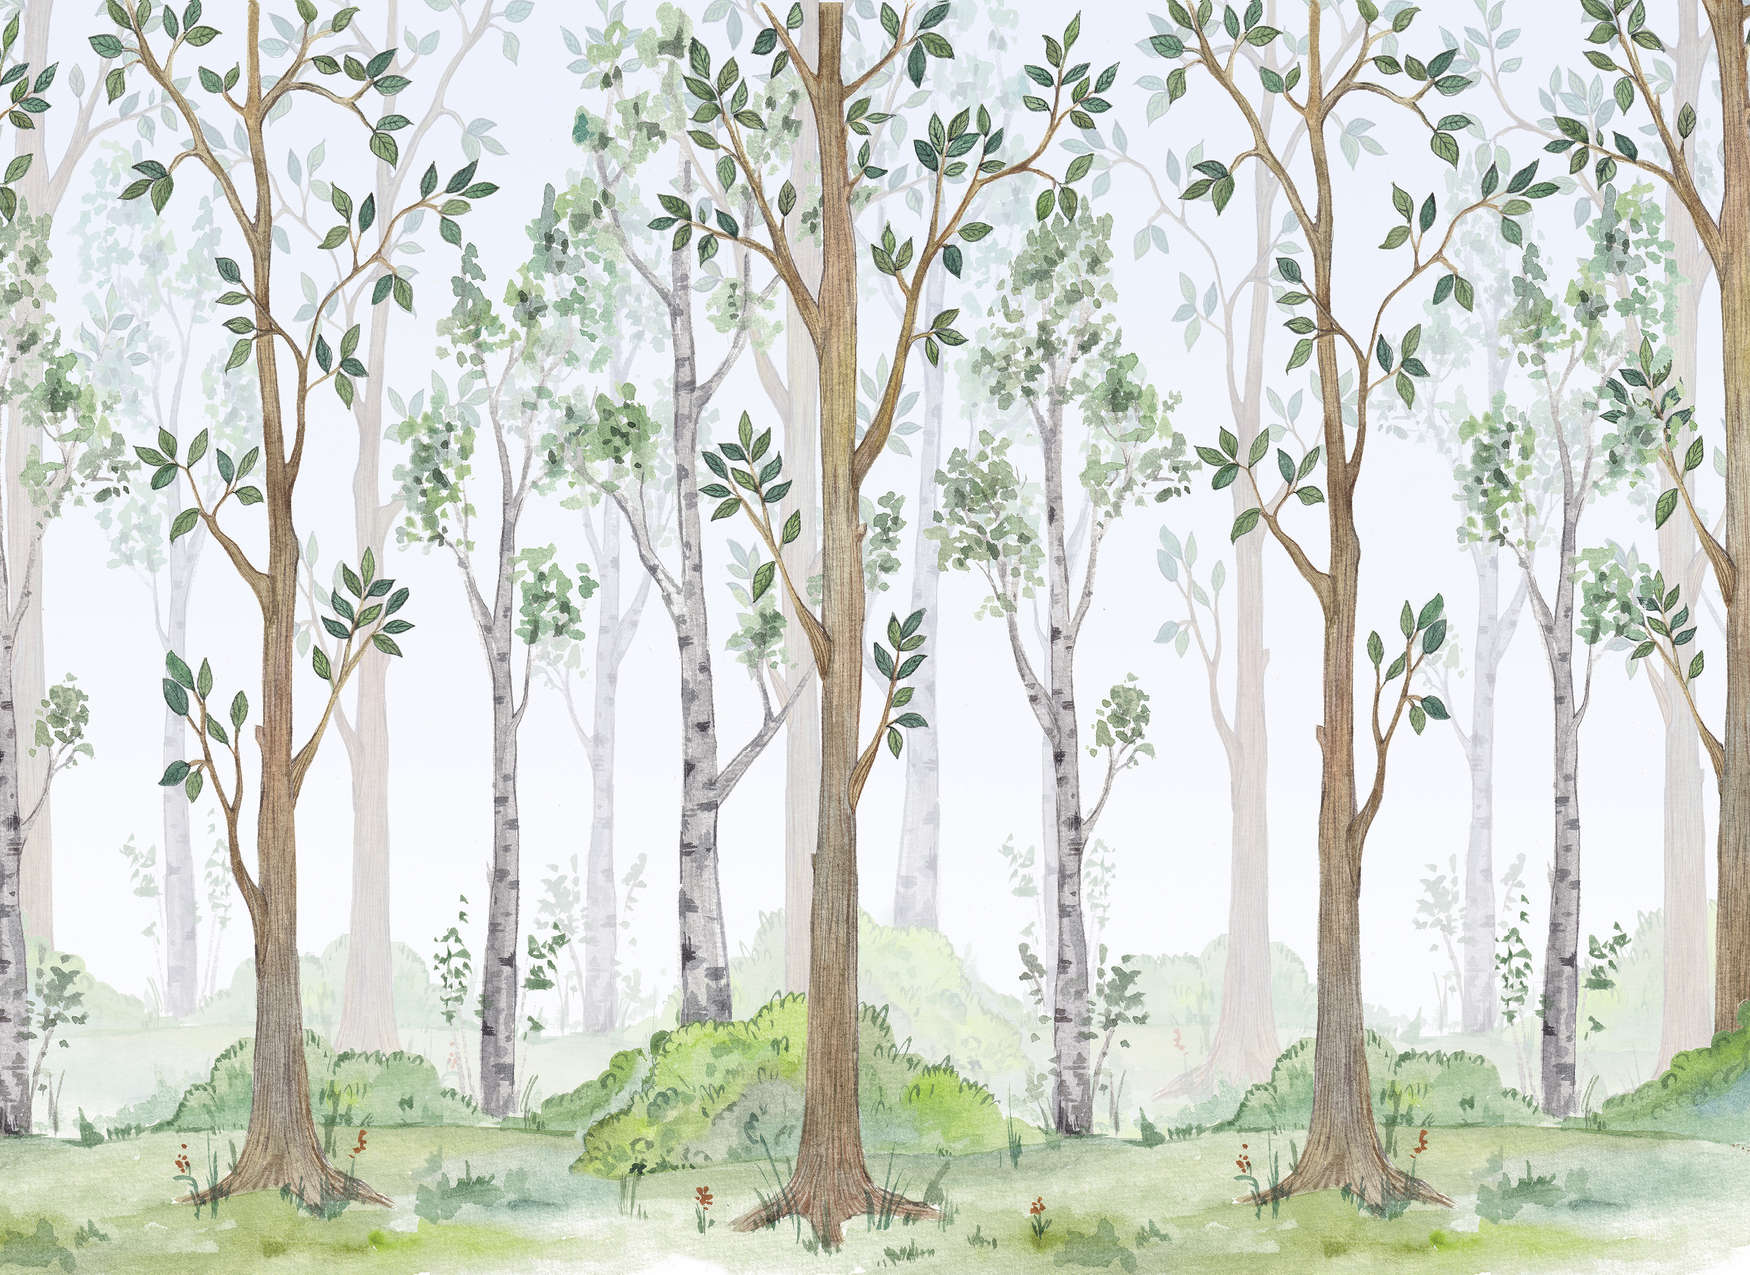             Papier peint avec forêt peinte pour chambre d'enfant - vert, marron, blanc
        